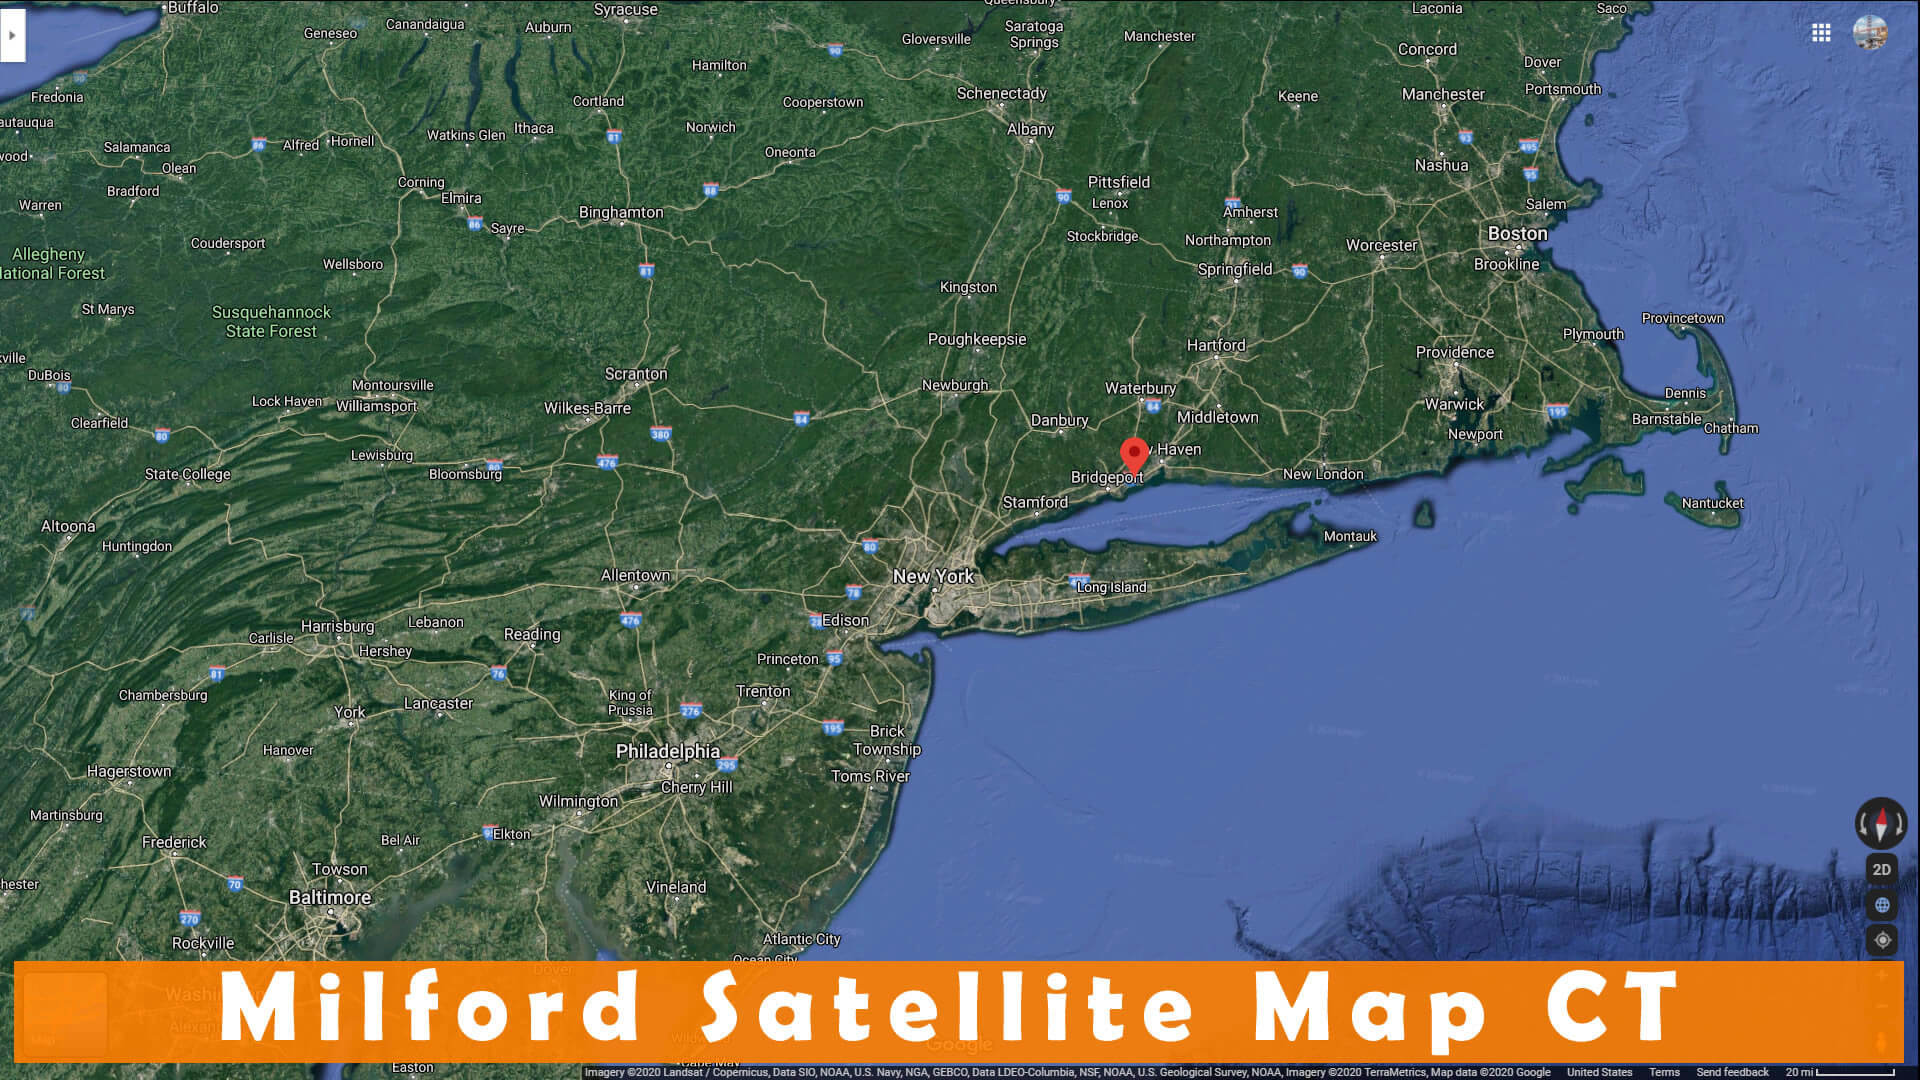 Milford Satellite Map CT